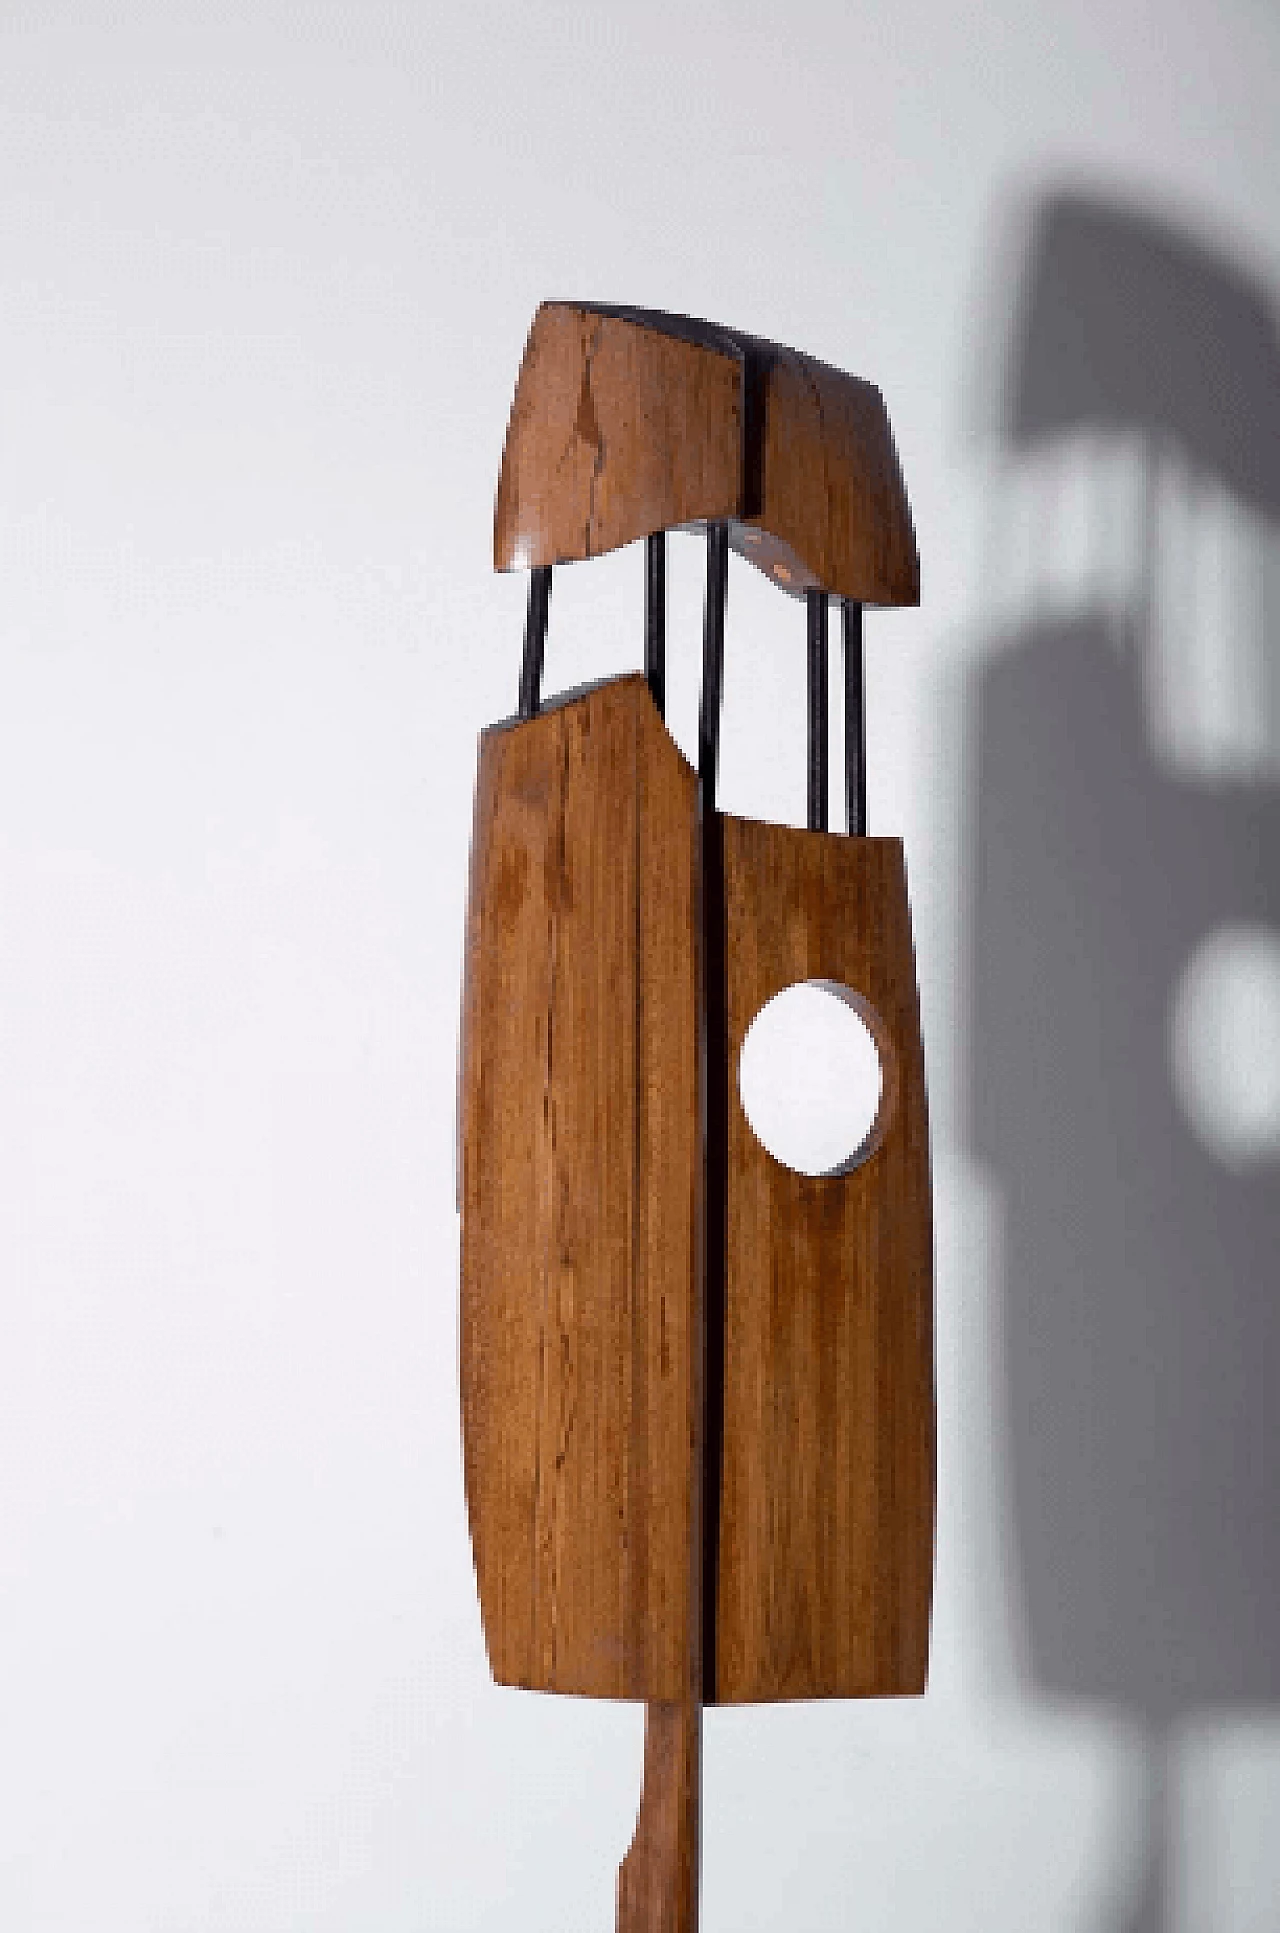 Elvio Becheroni, Totem, wood and iron sculpture, 1988 2